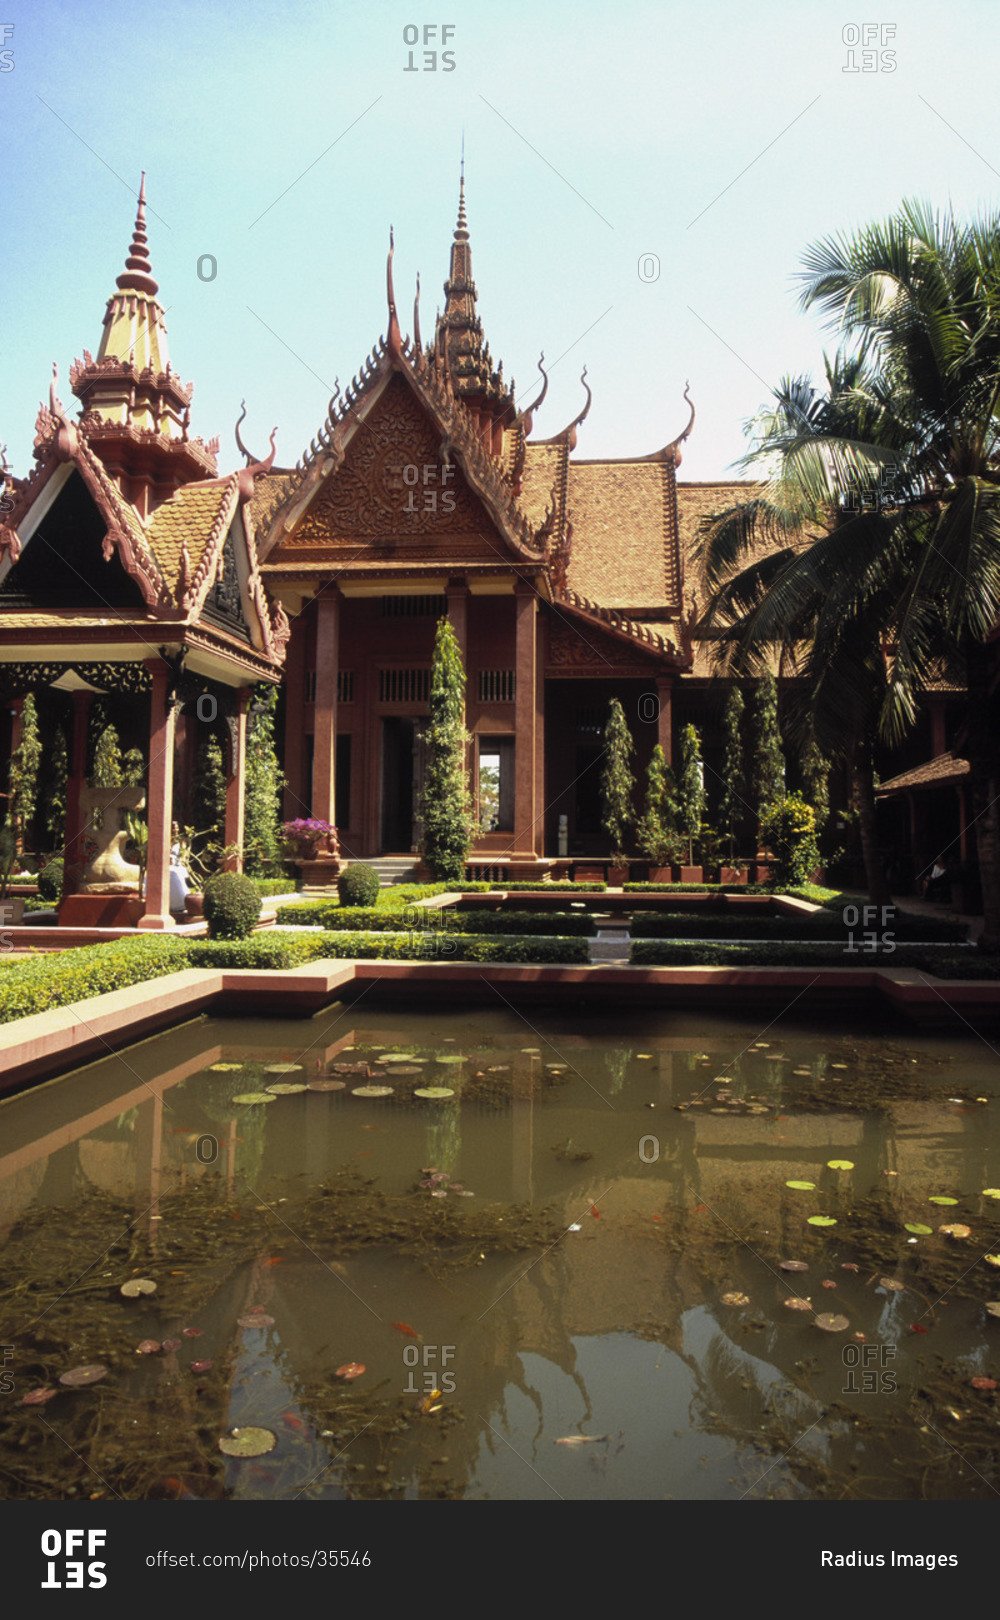 National Museum of Cambodia, Phnom Penh, Cambodia